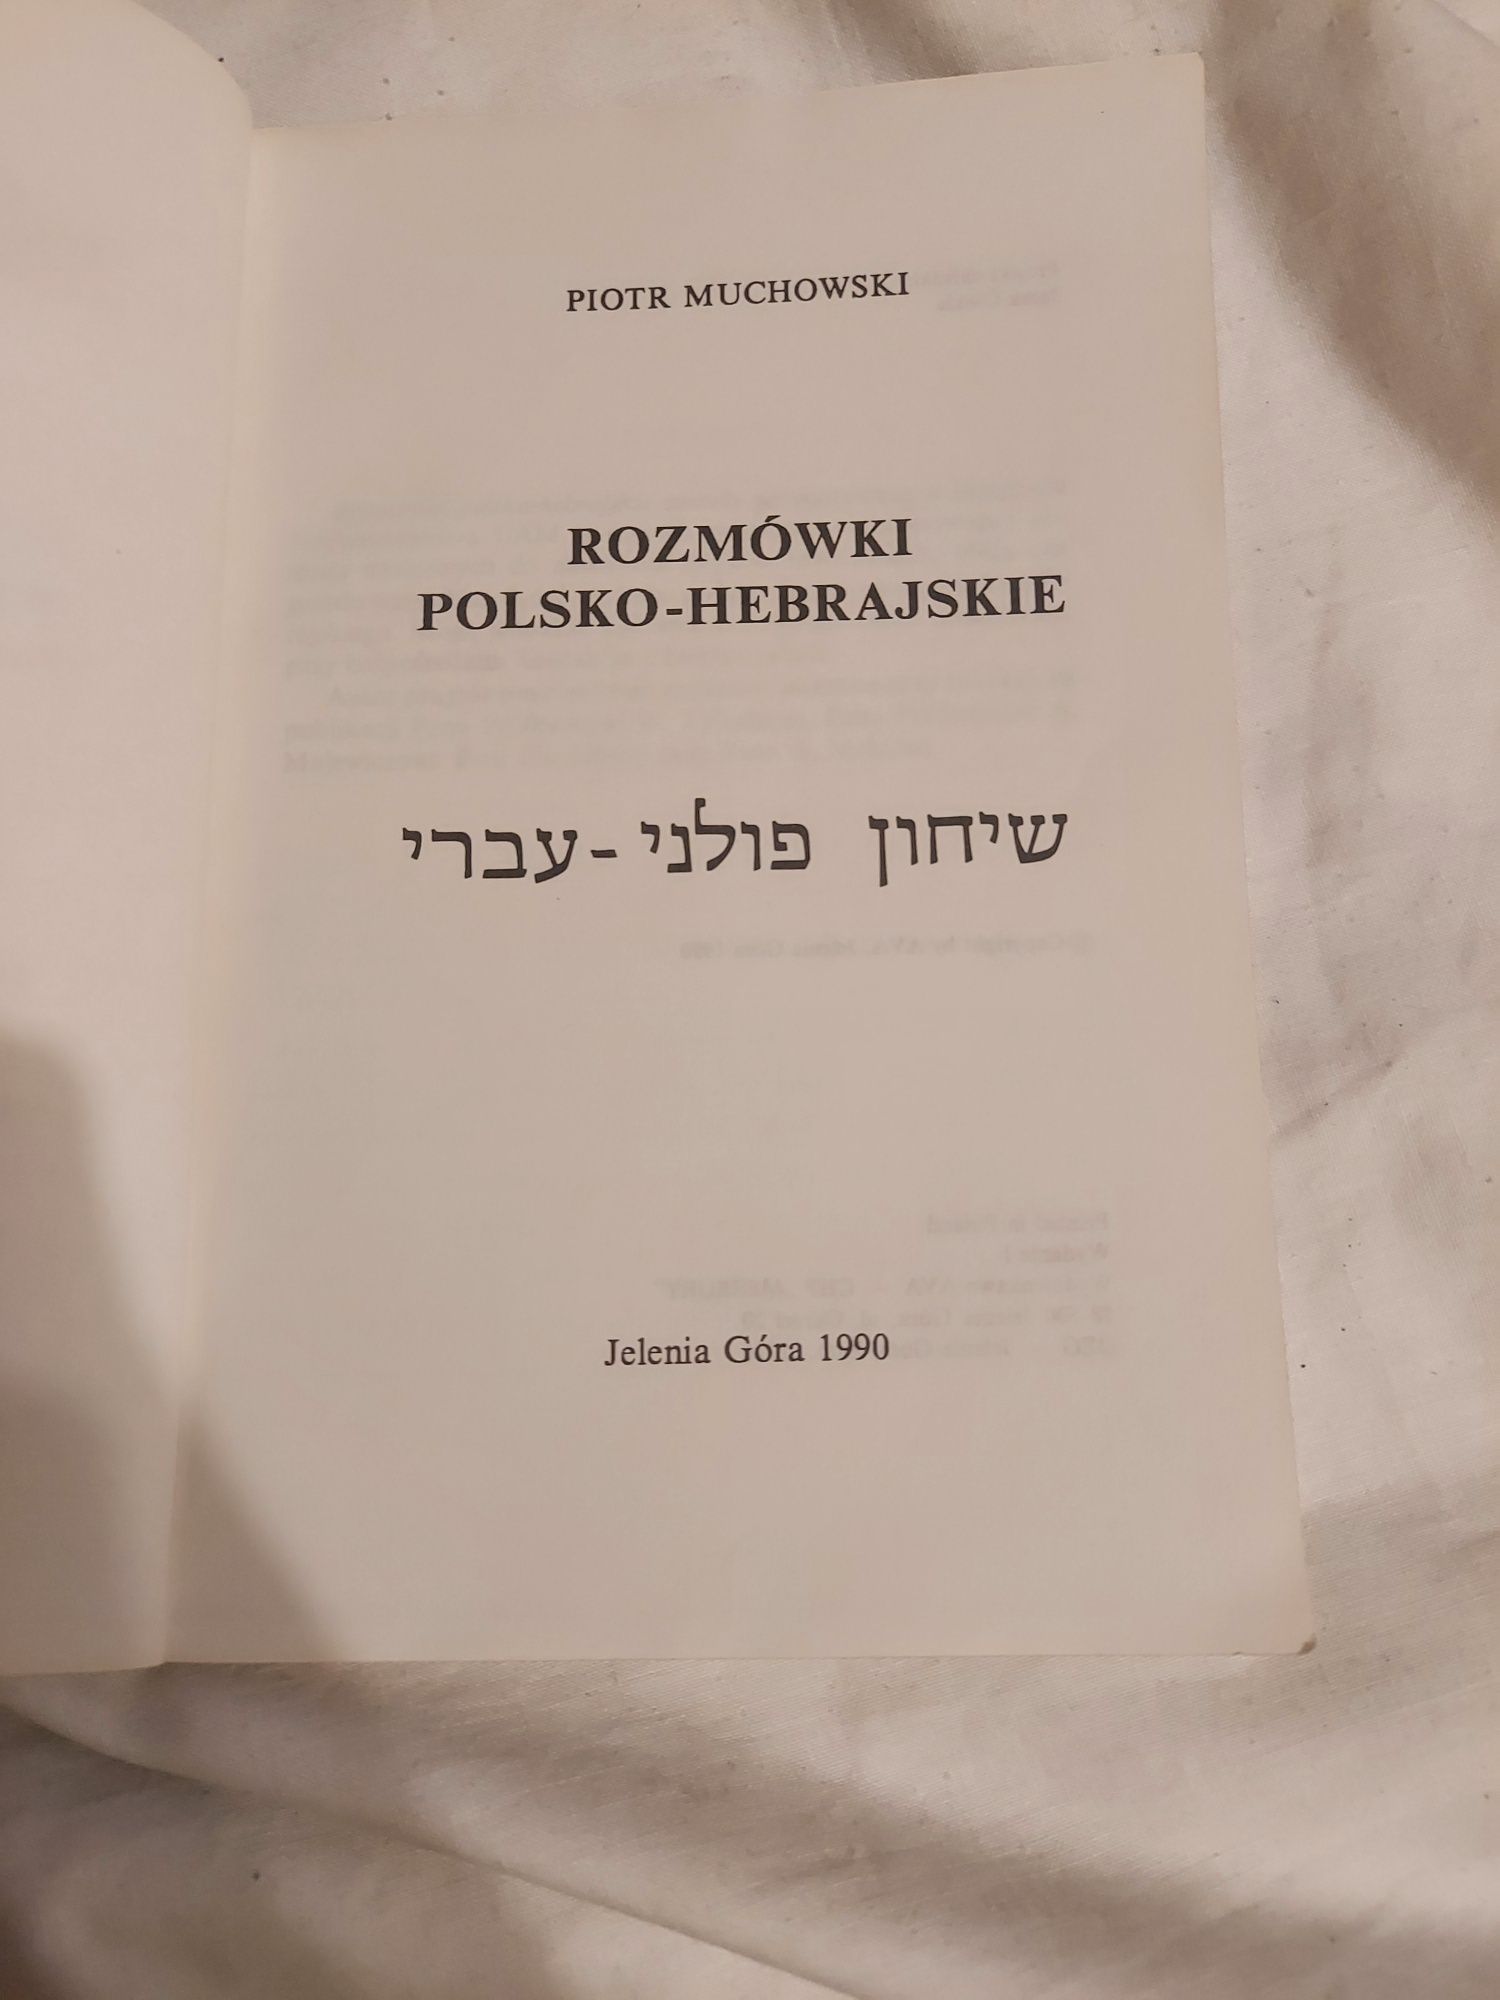 Rozmowki polsko-hebrajskie muchowski